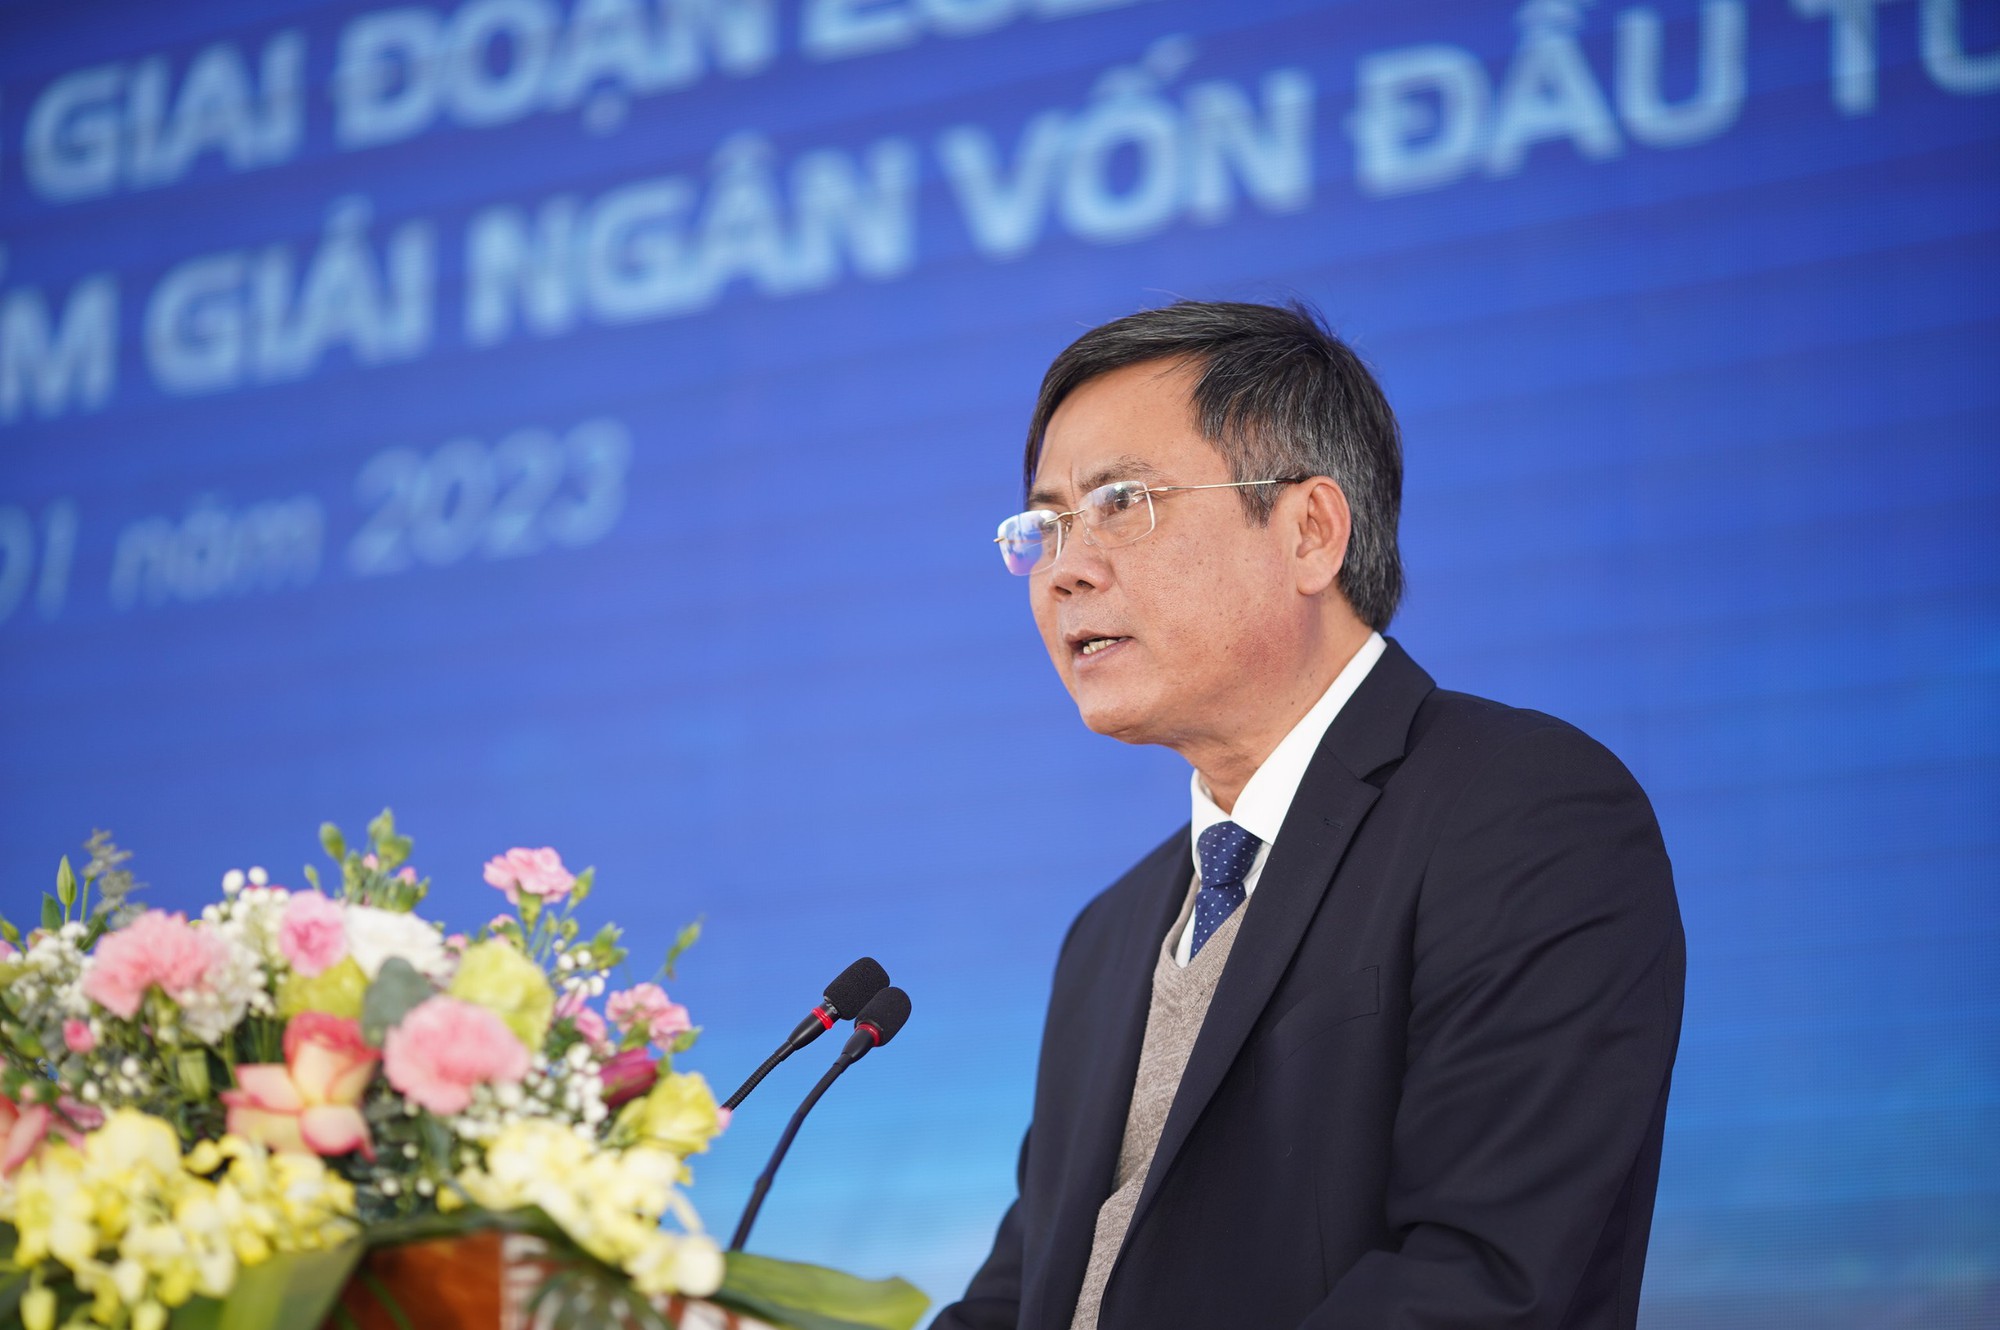 Nhà thầu quyết tâm rút ngắn tiến độ cao tốc Bùng - Vạn Ninh gần 9,4 nghìn tỷ đồng - Ảnh 3.